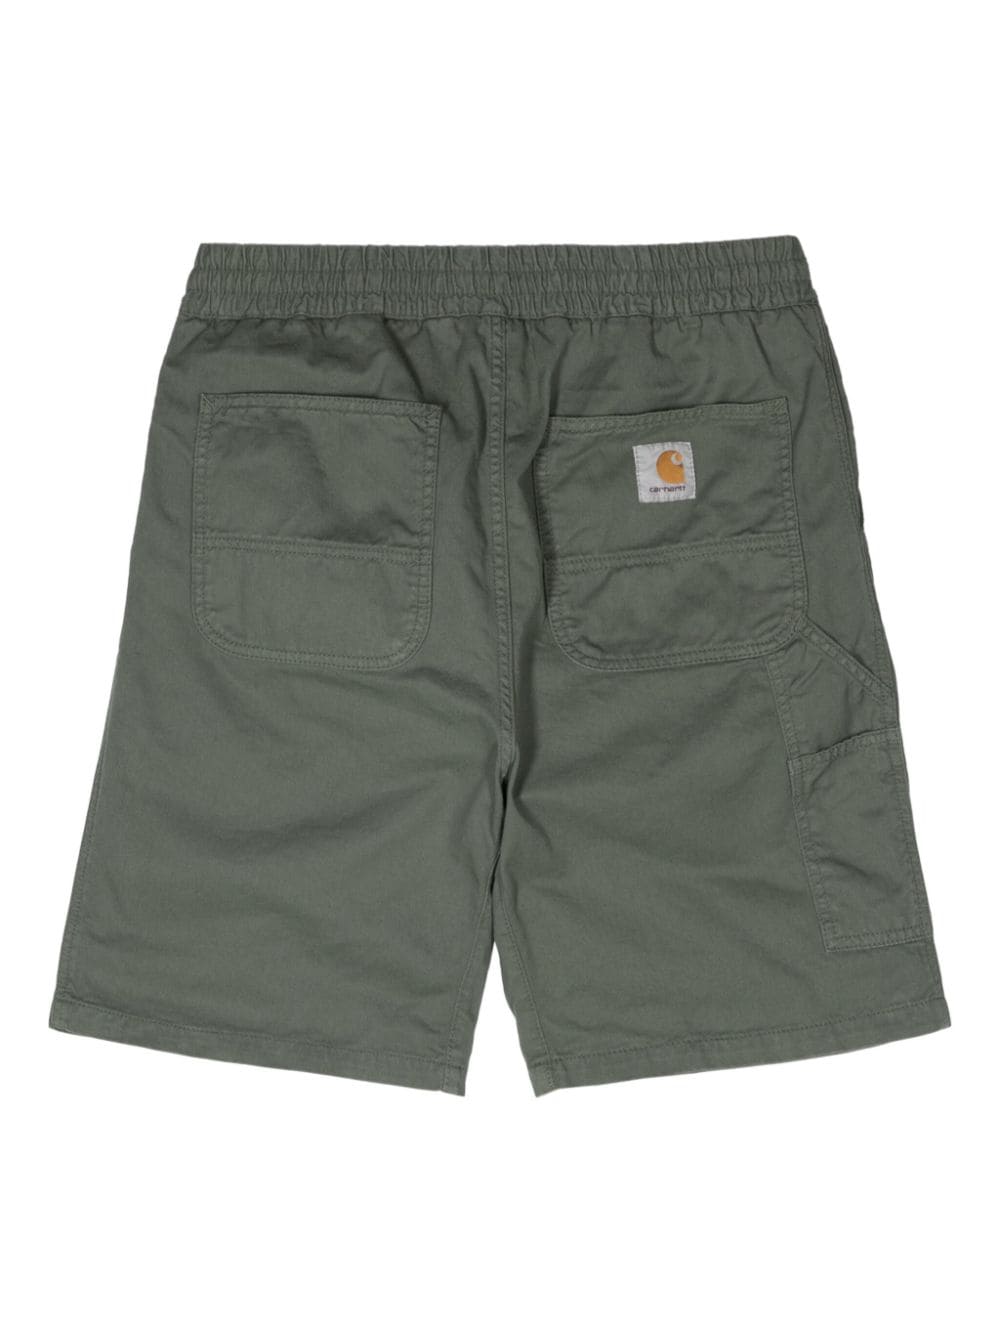 Carhartt WIP Flint organic cotton shorts - Groen